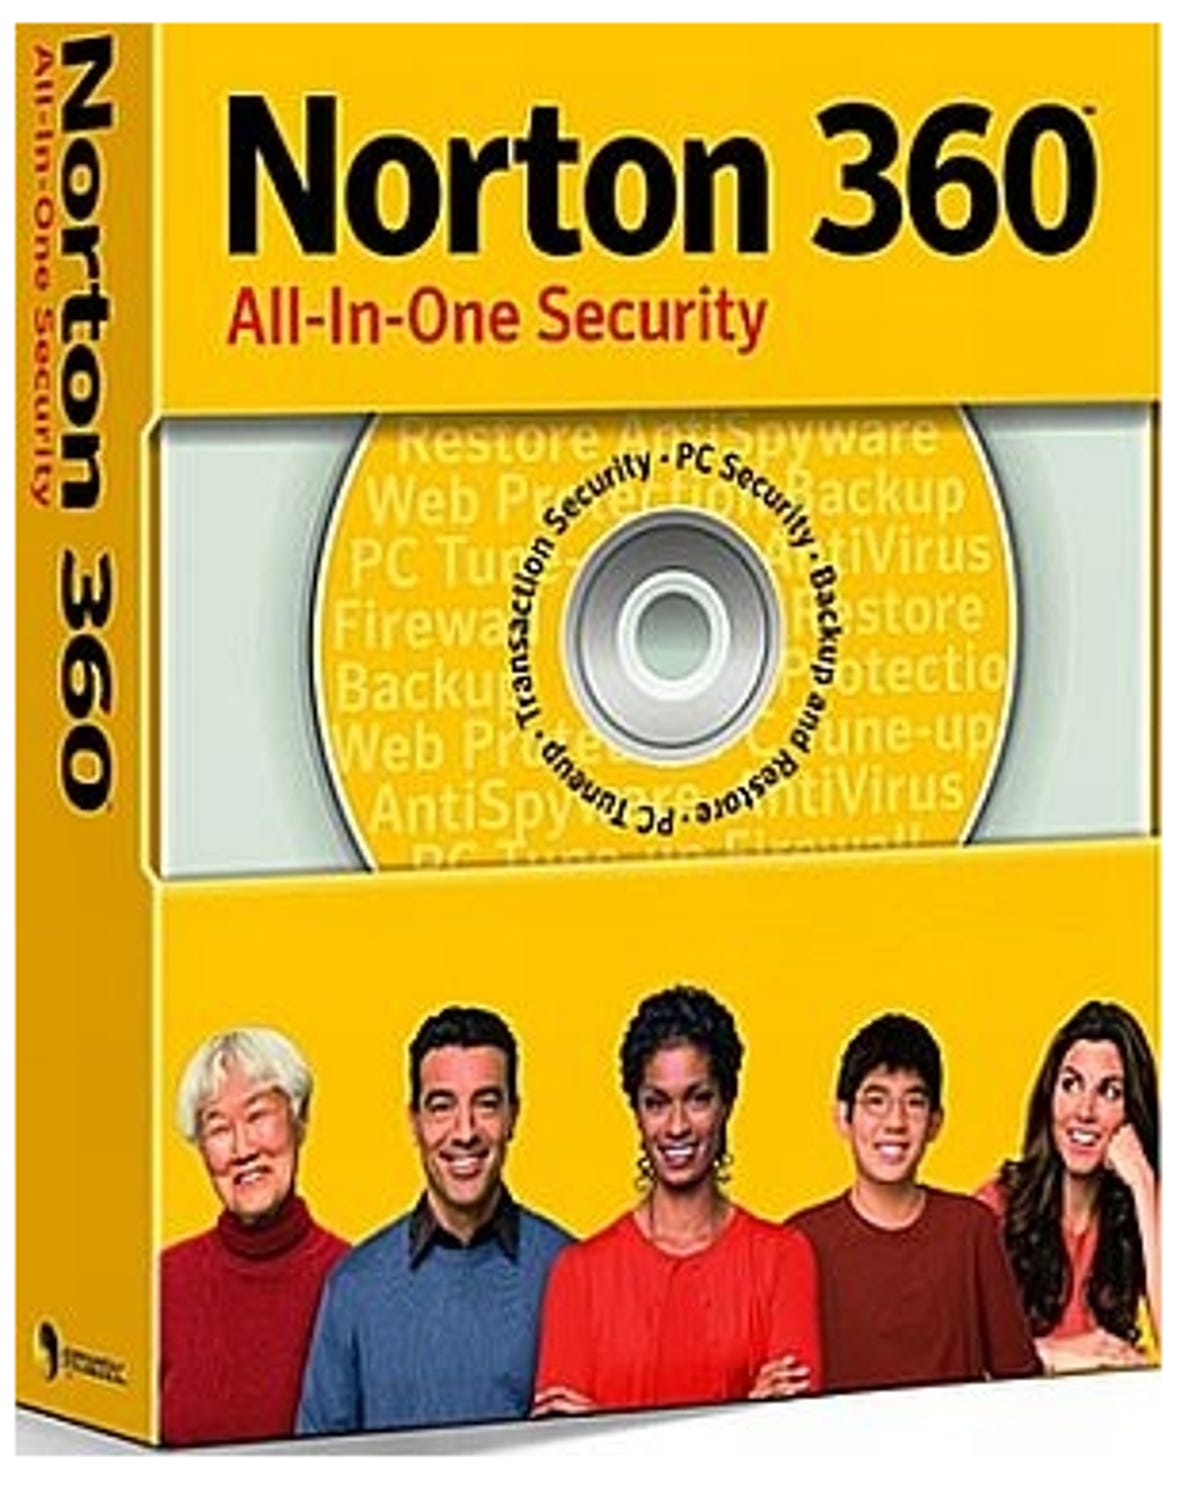 Norton360_09.png